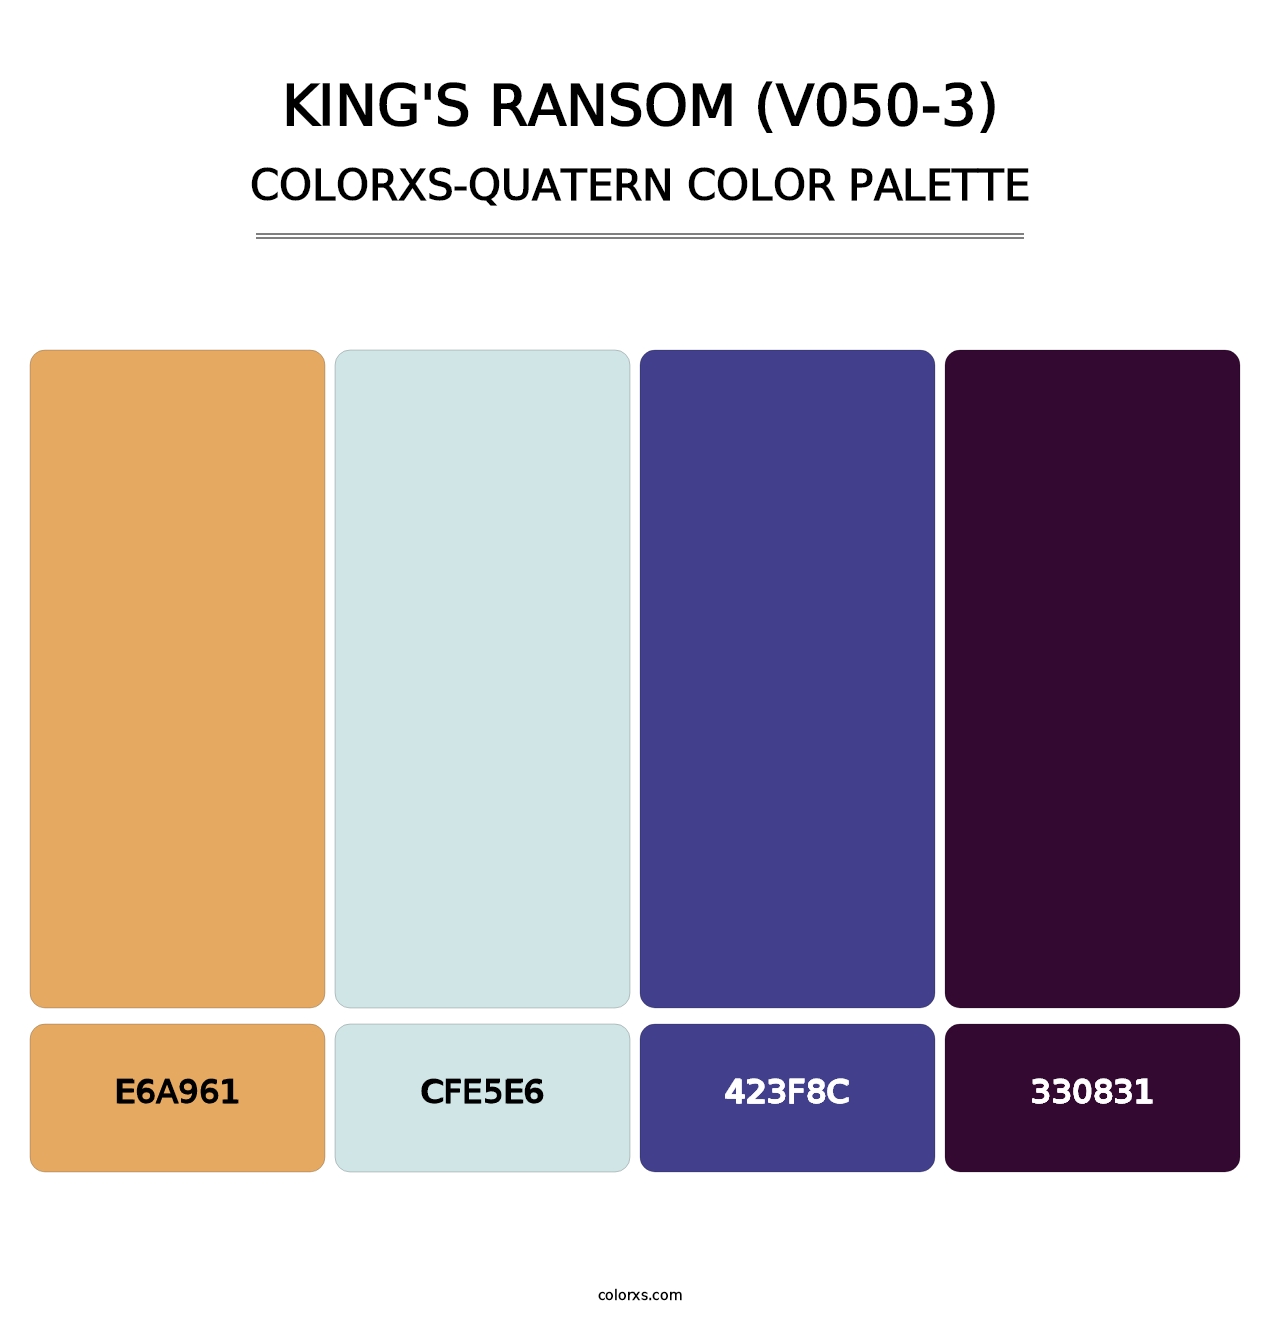 King's Ransom (V050-3) - Colorxs Quatern Palette